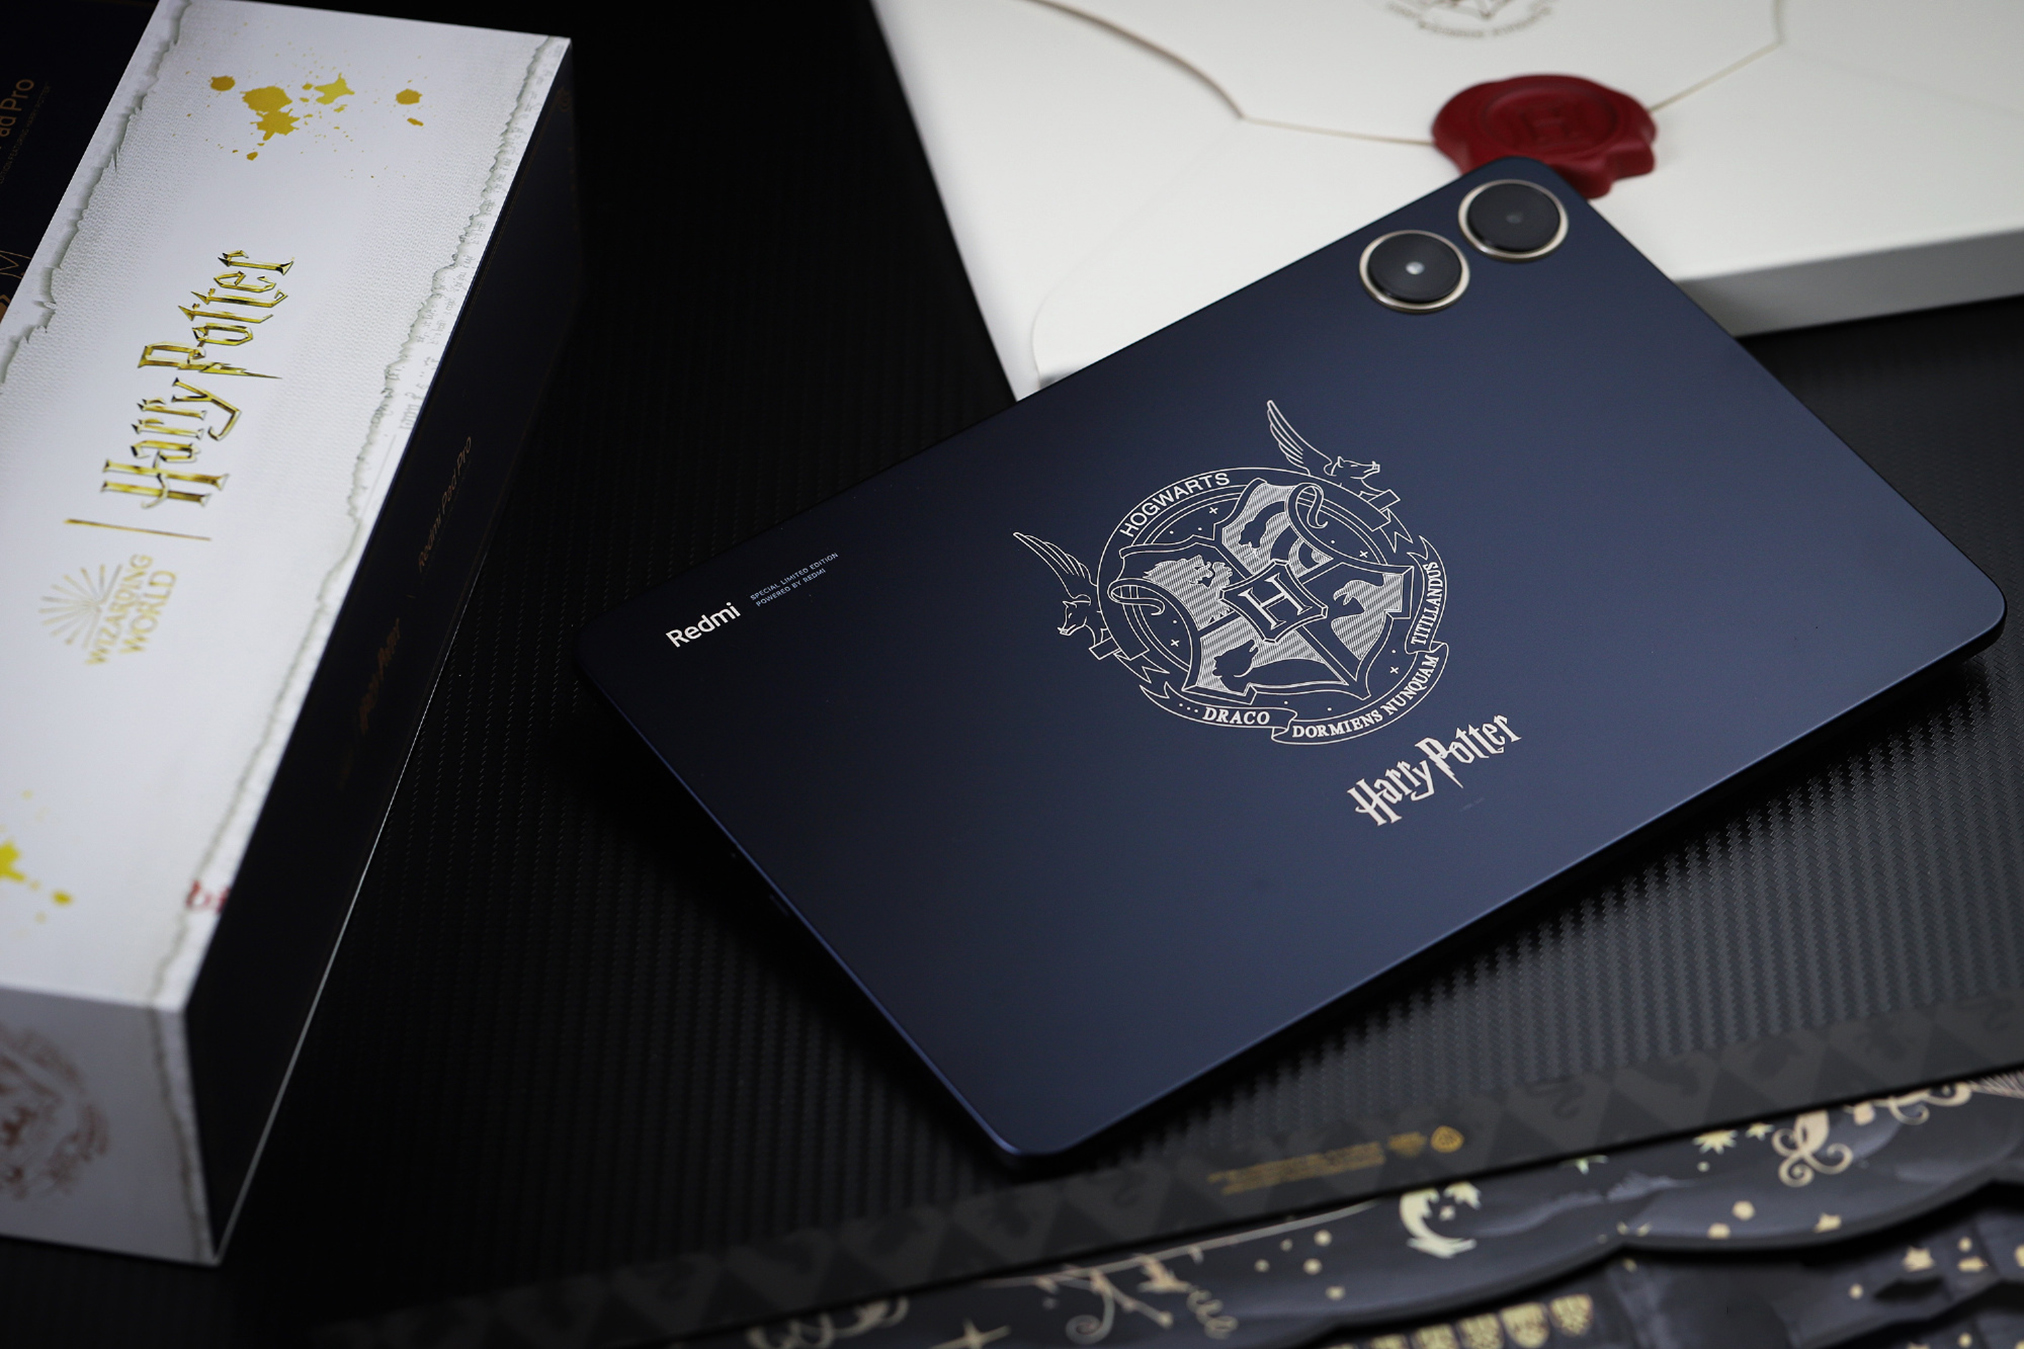 Cận cảnh máy tính bảng 12 inch giá rẻ của Xiaomi: Thiết kế đẹp như iPad, có cả bản Harry Potter đặc biệt cho các Potterheads mà giá chỉ hơn 5 triệu đồng- Ảnh 21.